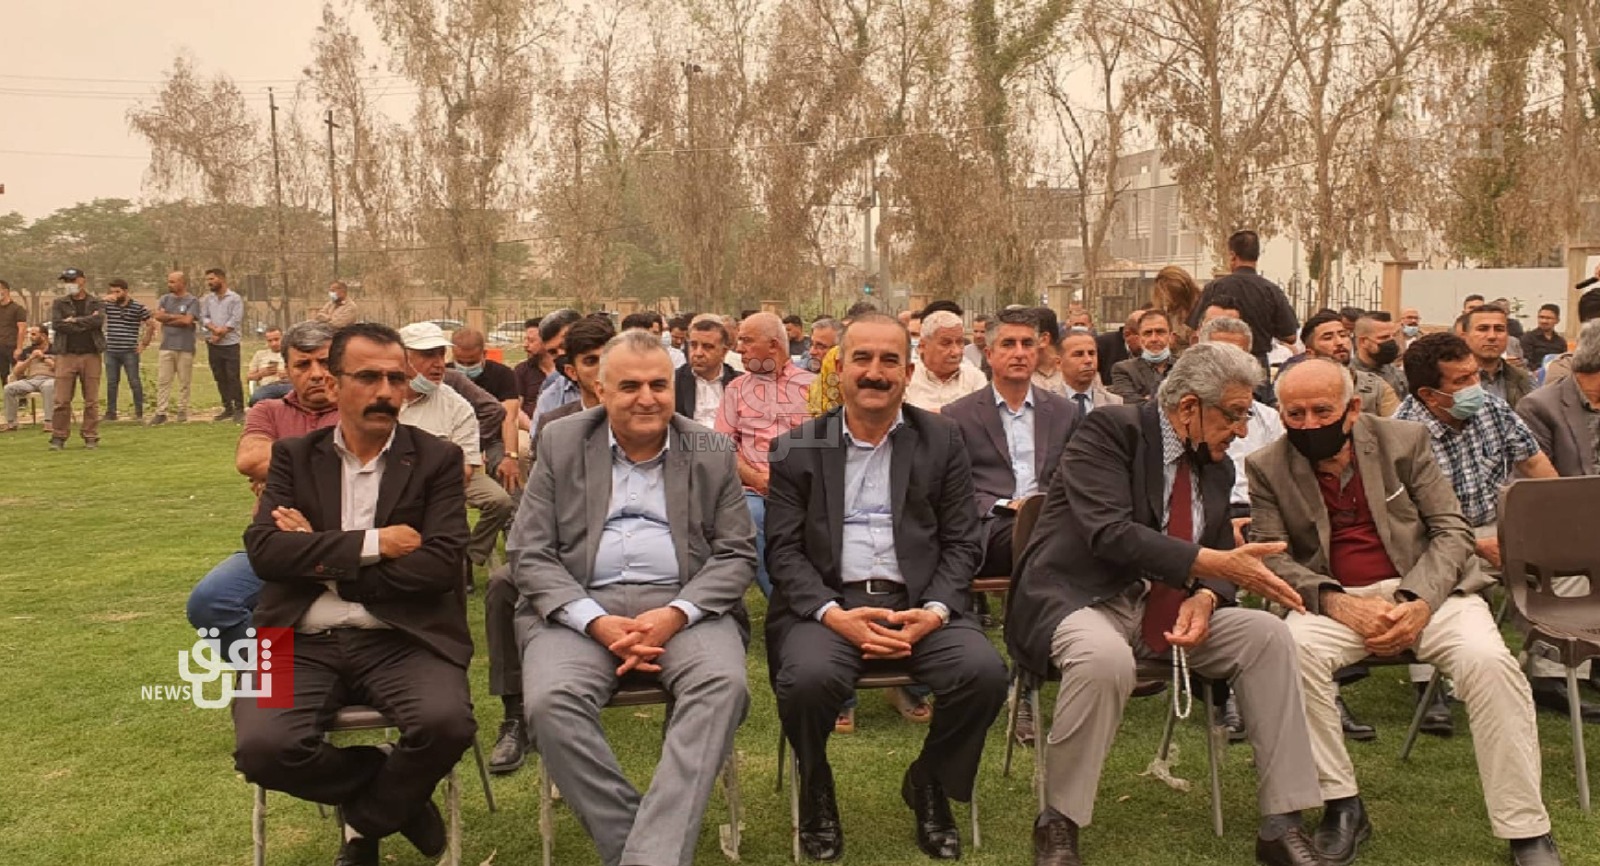 السليمانية.. حفل توزيع كتاب العراق دولة المقابر الجماعية (صور)